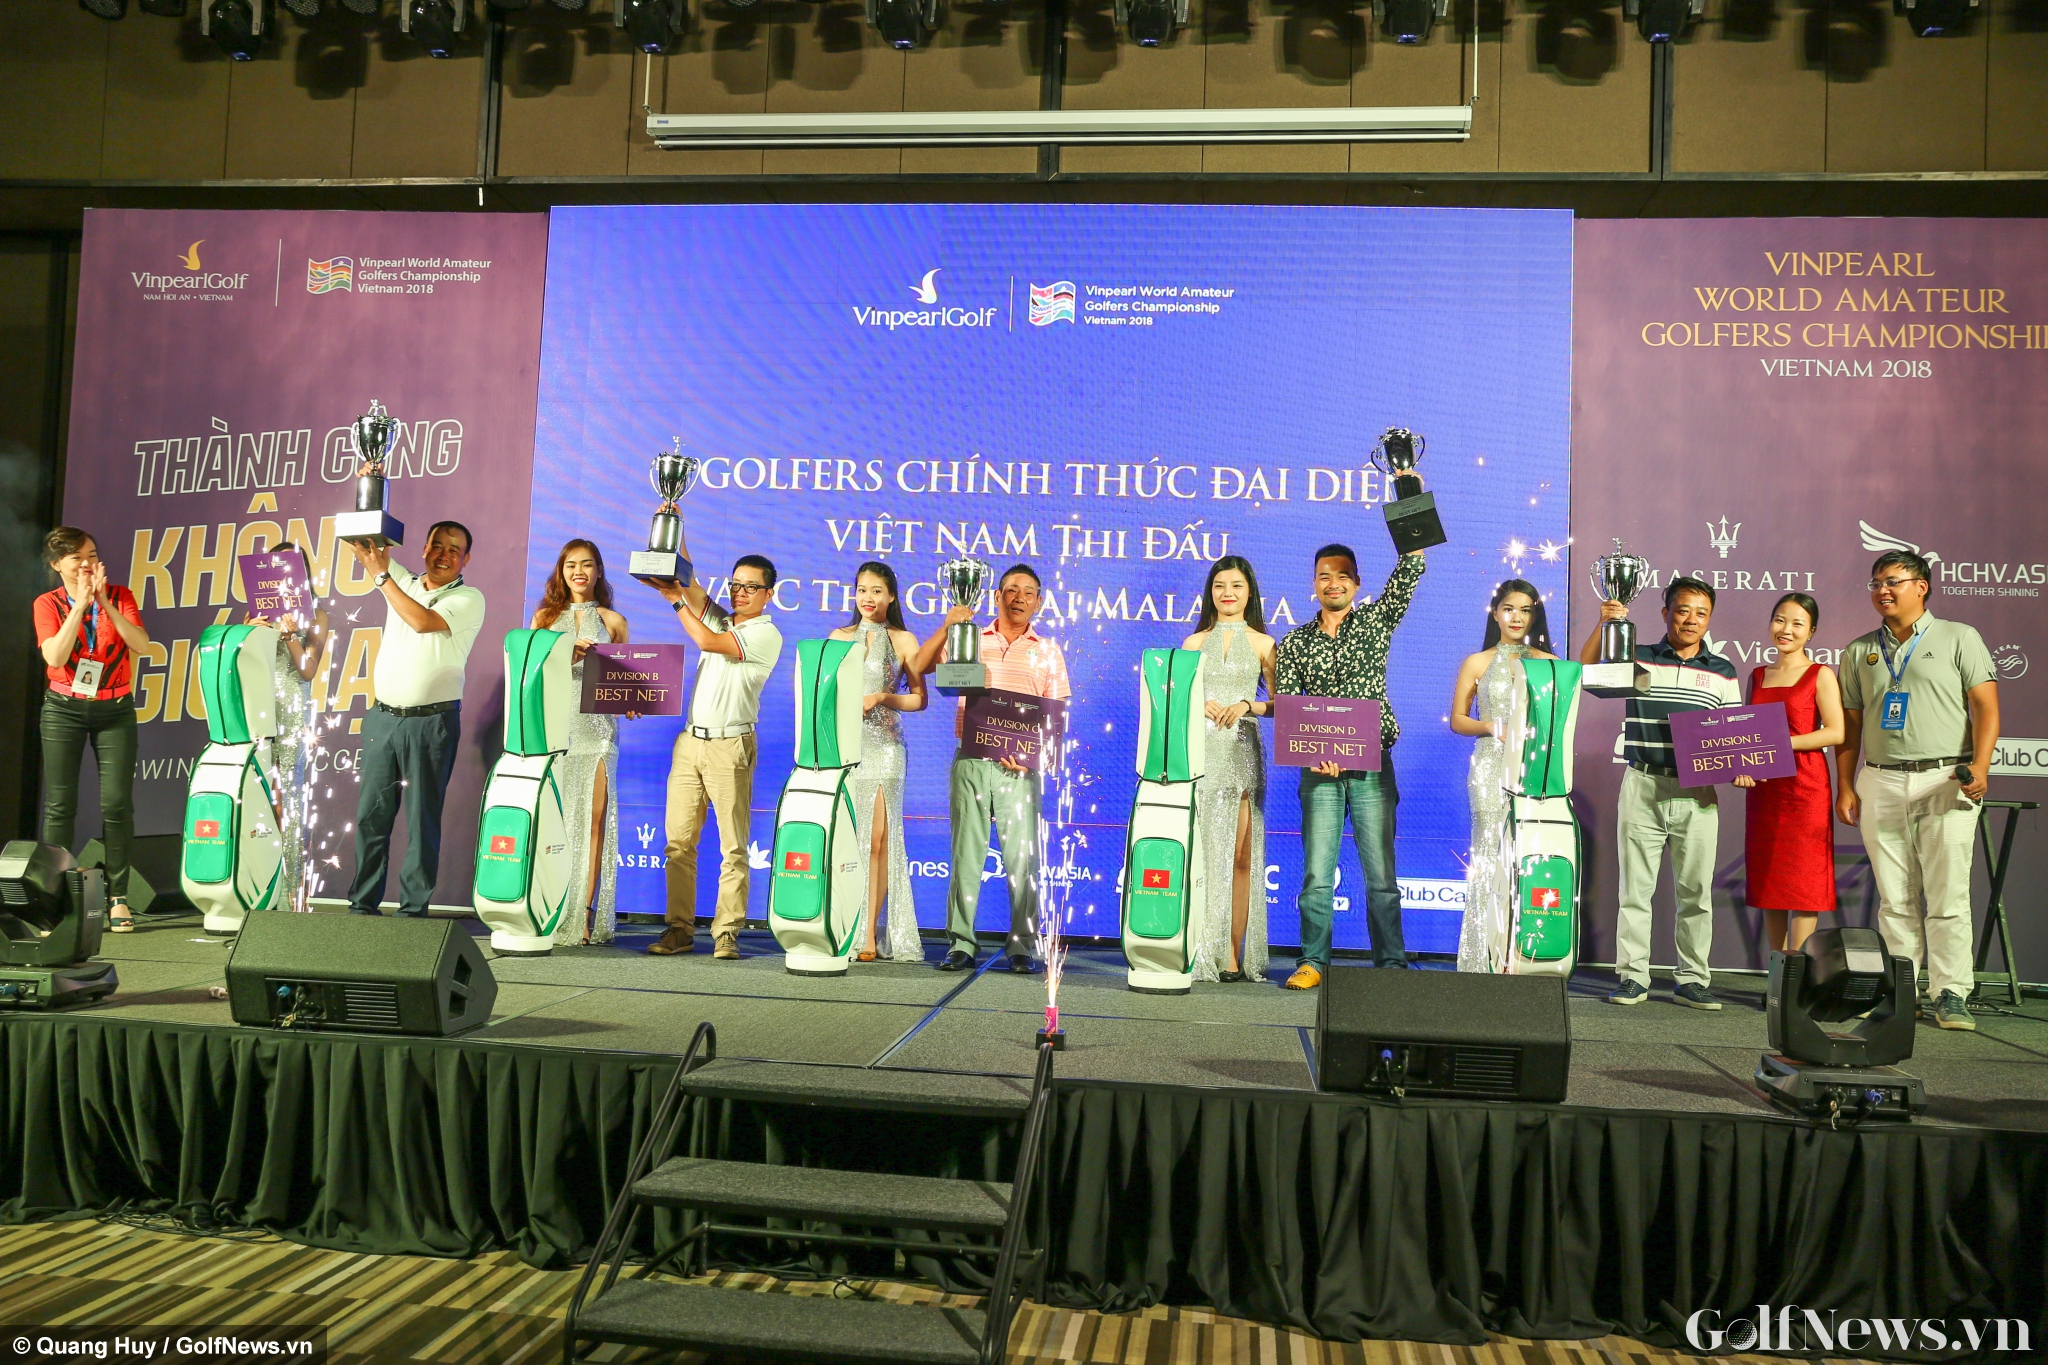 Chính thức tìm ra 5 golfer đại diện Việt Nam tham dự WAGC 2018 thế giới